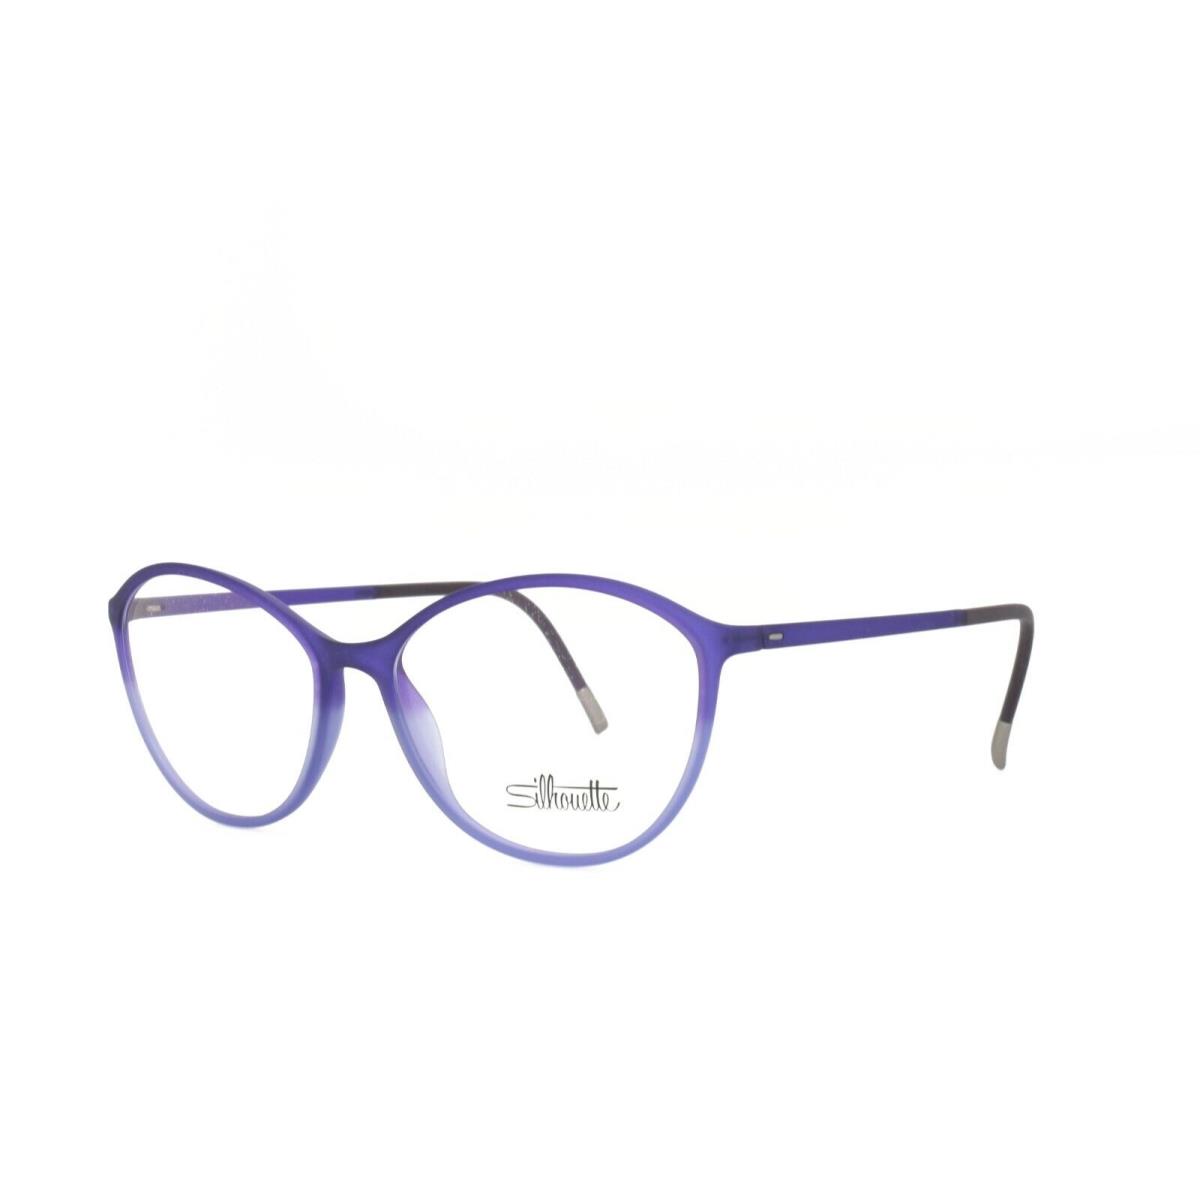 Silhouette Spx Illusion 1584 75 4310 Eyeglasses 54-15-135 Purple - Purple Frame